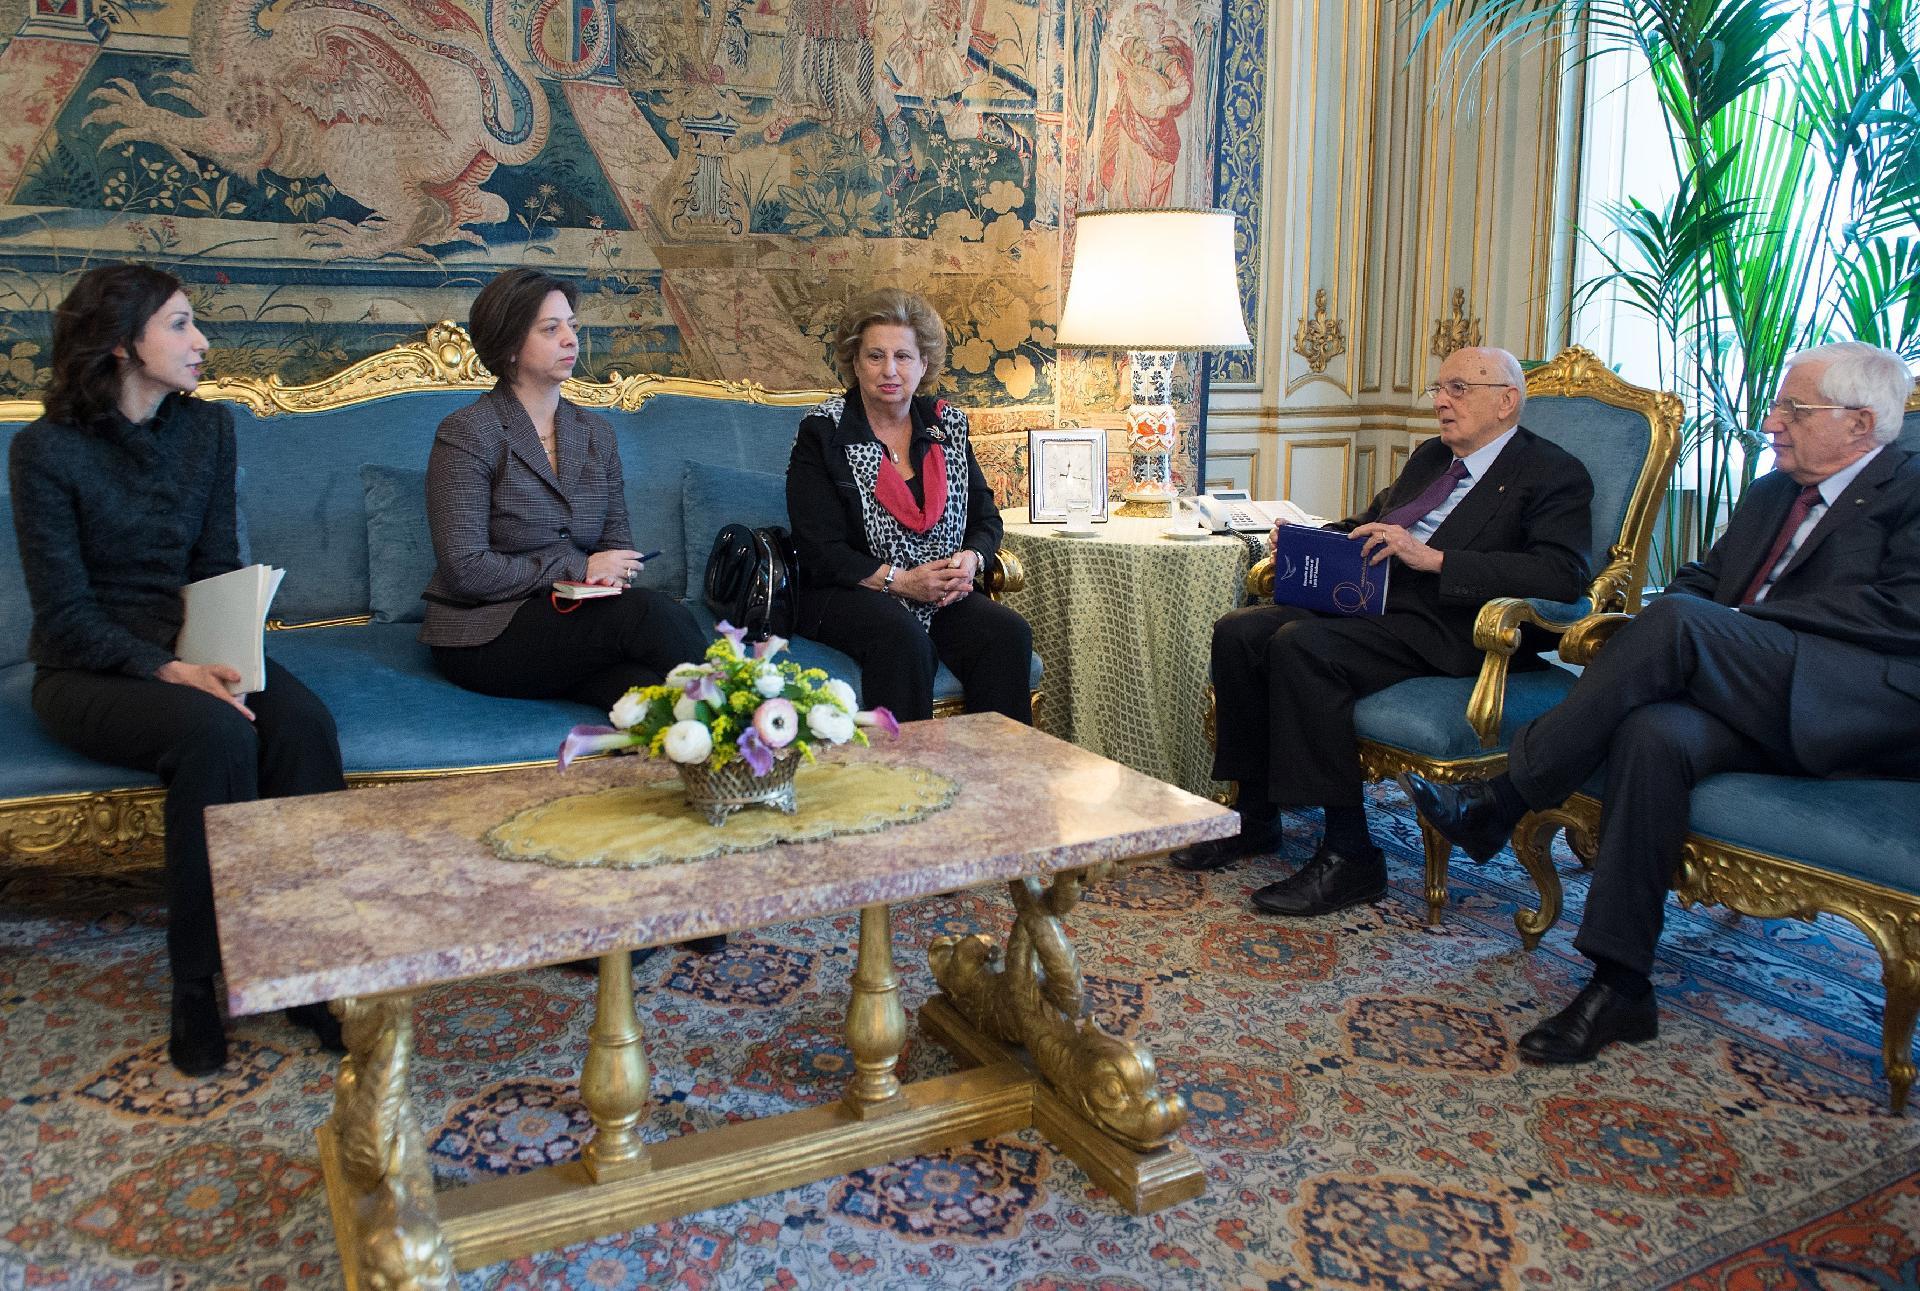 Il Presidente Giorgio Napolitano nel corso dell'incontro con Maria Falcone, Presidente della Fondazione Giovanni e Francesca Falcone, Loredana Introini e Giovanna Boda